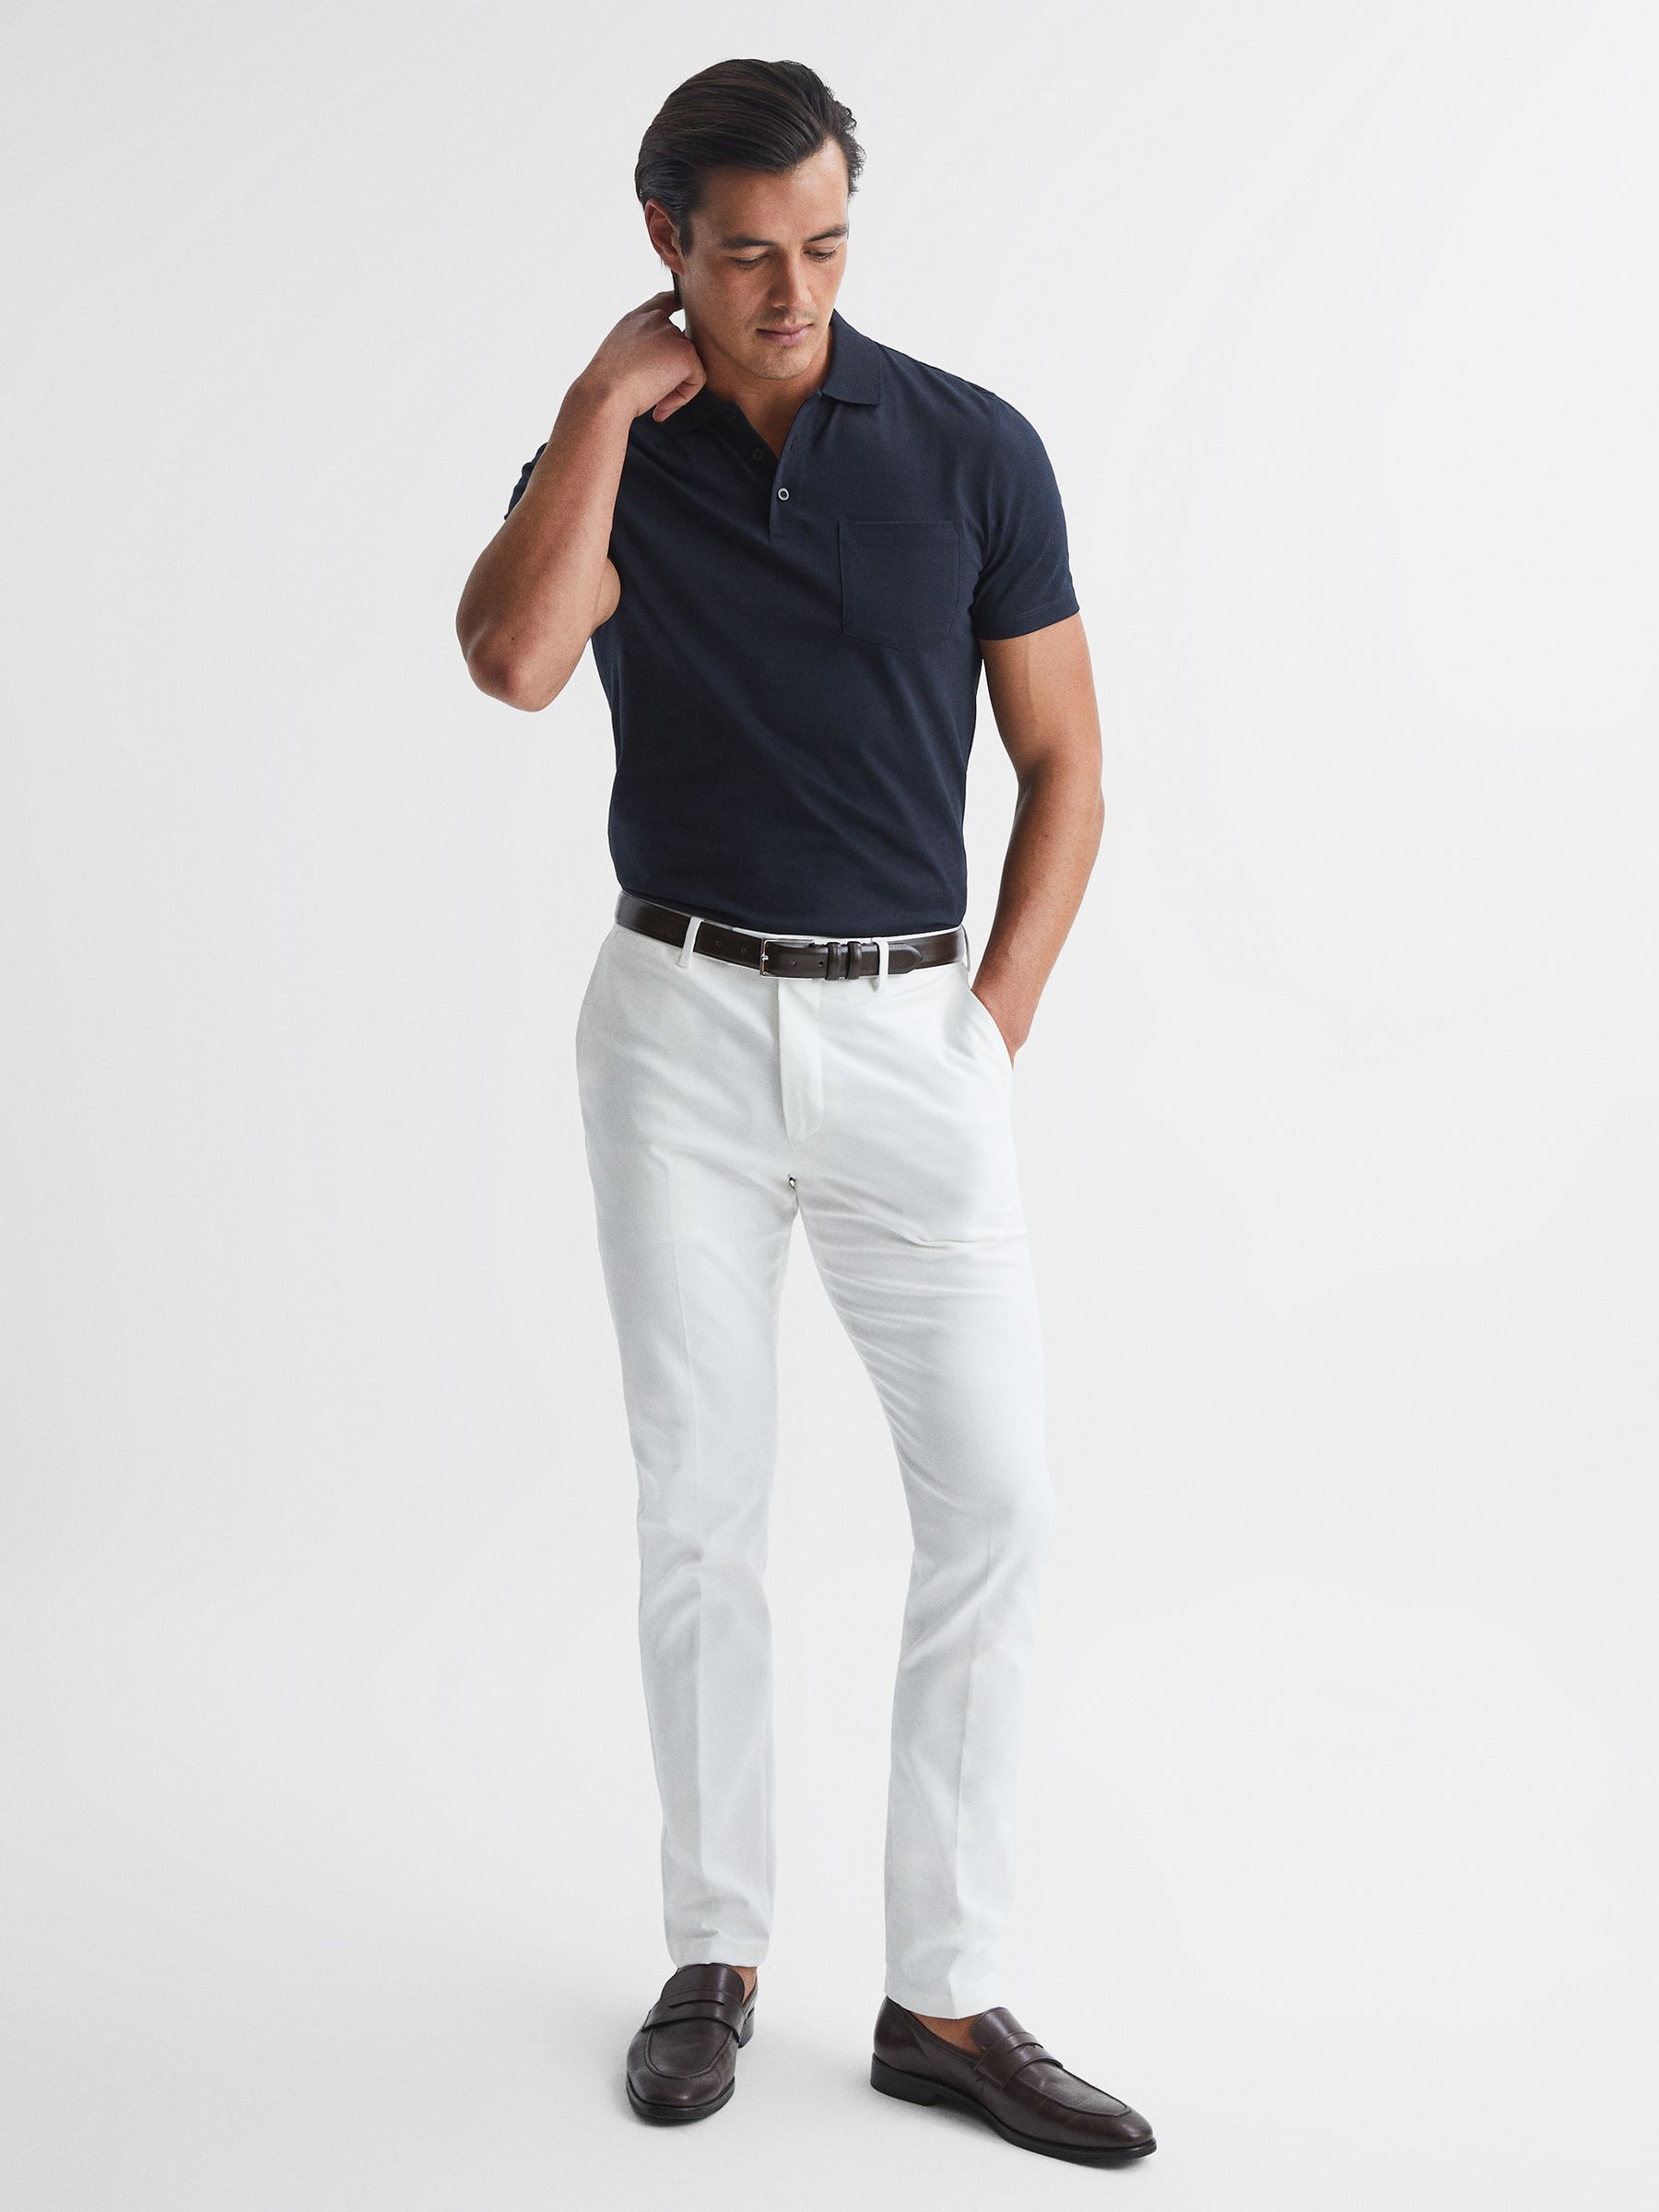 Reiss Austin Short Sleeve Polo T-Shirt | REISS Australia